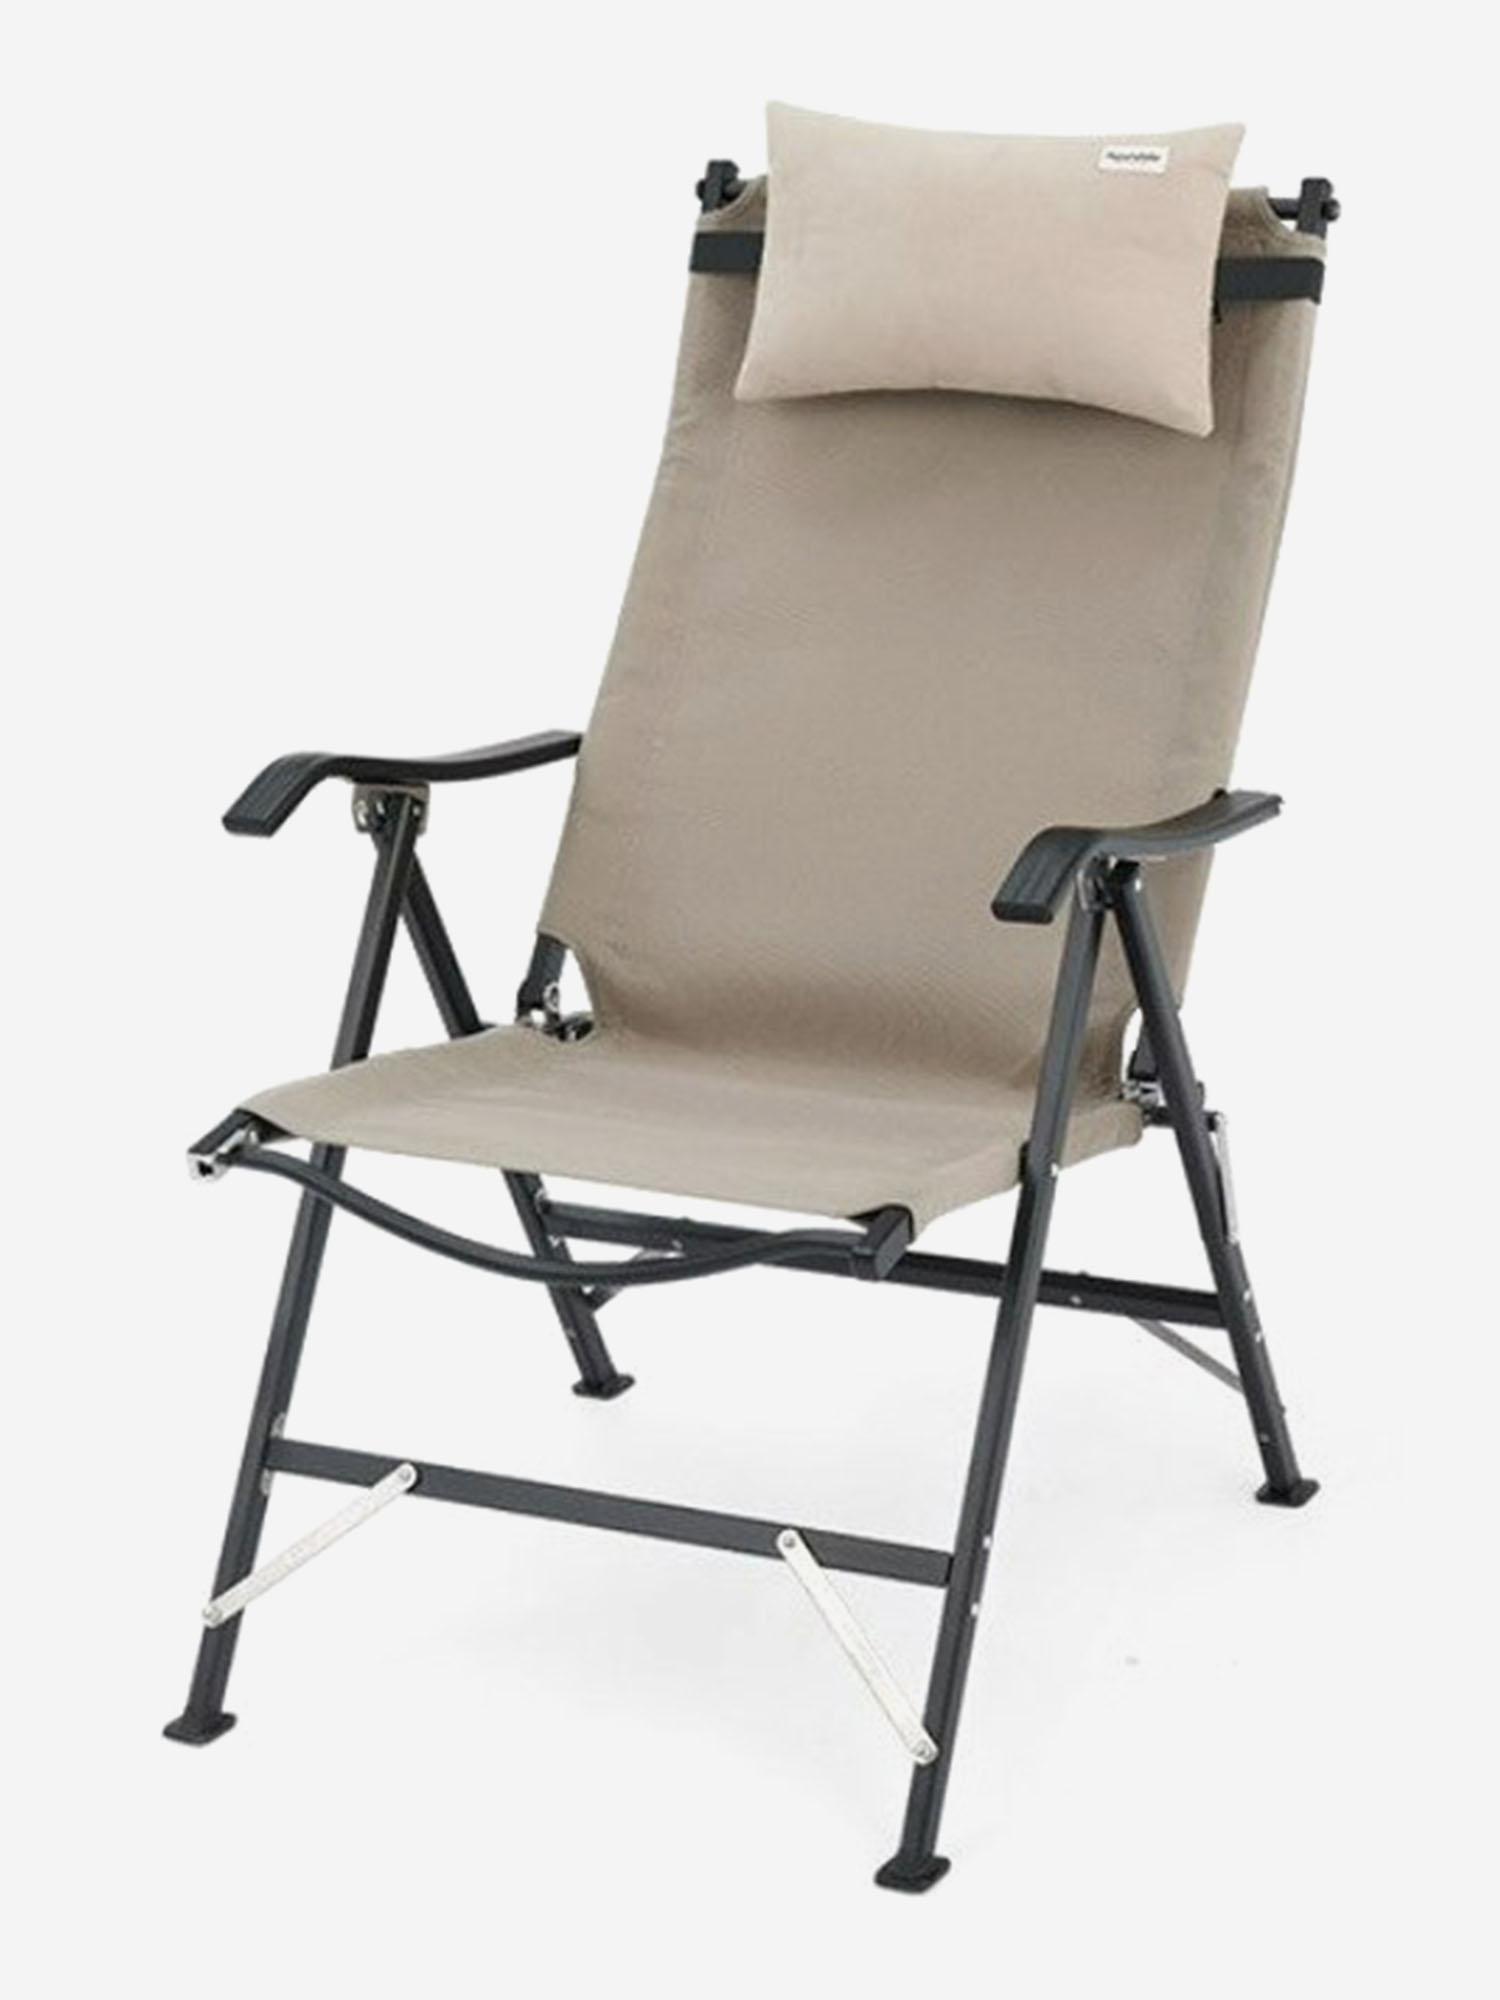 Кресло туристическое Naturehike TY10, складное, хаки, до 120 кг, Зеленый кресло туристическое naturehike складное черное увеличенного размера нагрузка до 120 кг